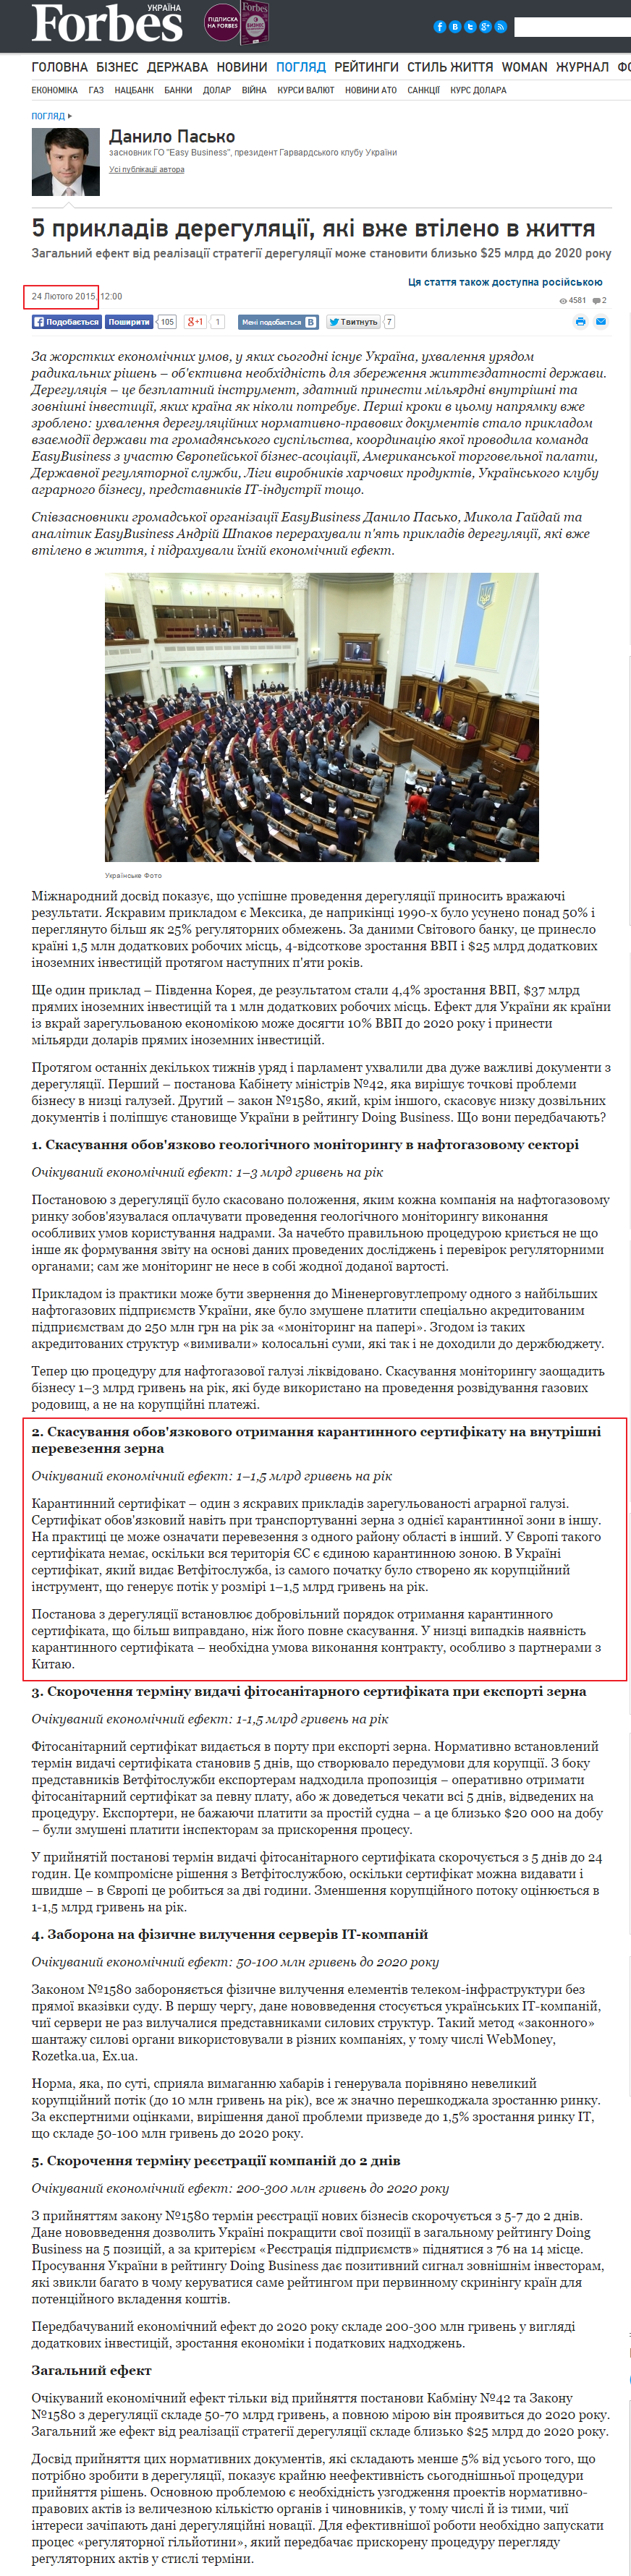 http://forbes.ua/ua/opinions/1389297-5-prikladiv-deregulyaciyi-yaki-vzhe-vtileno-v-zhittya